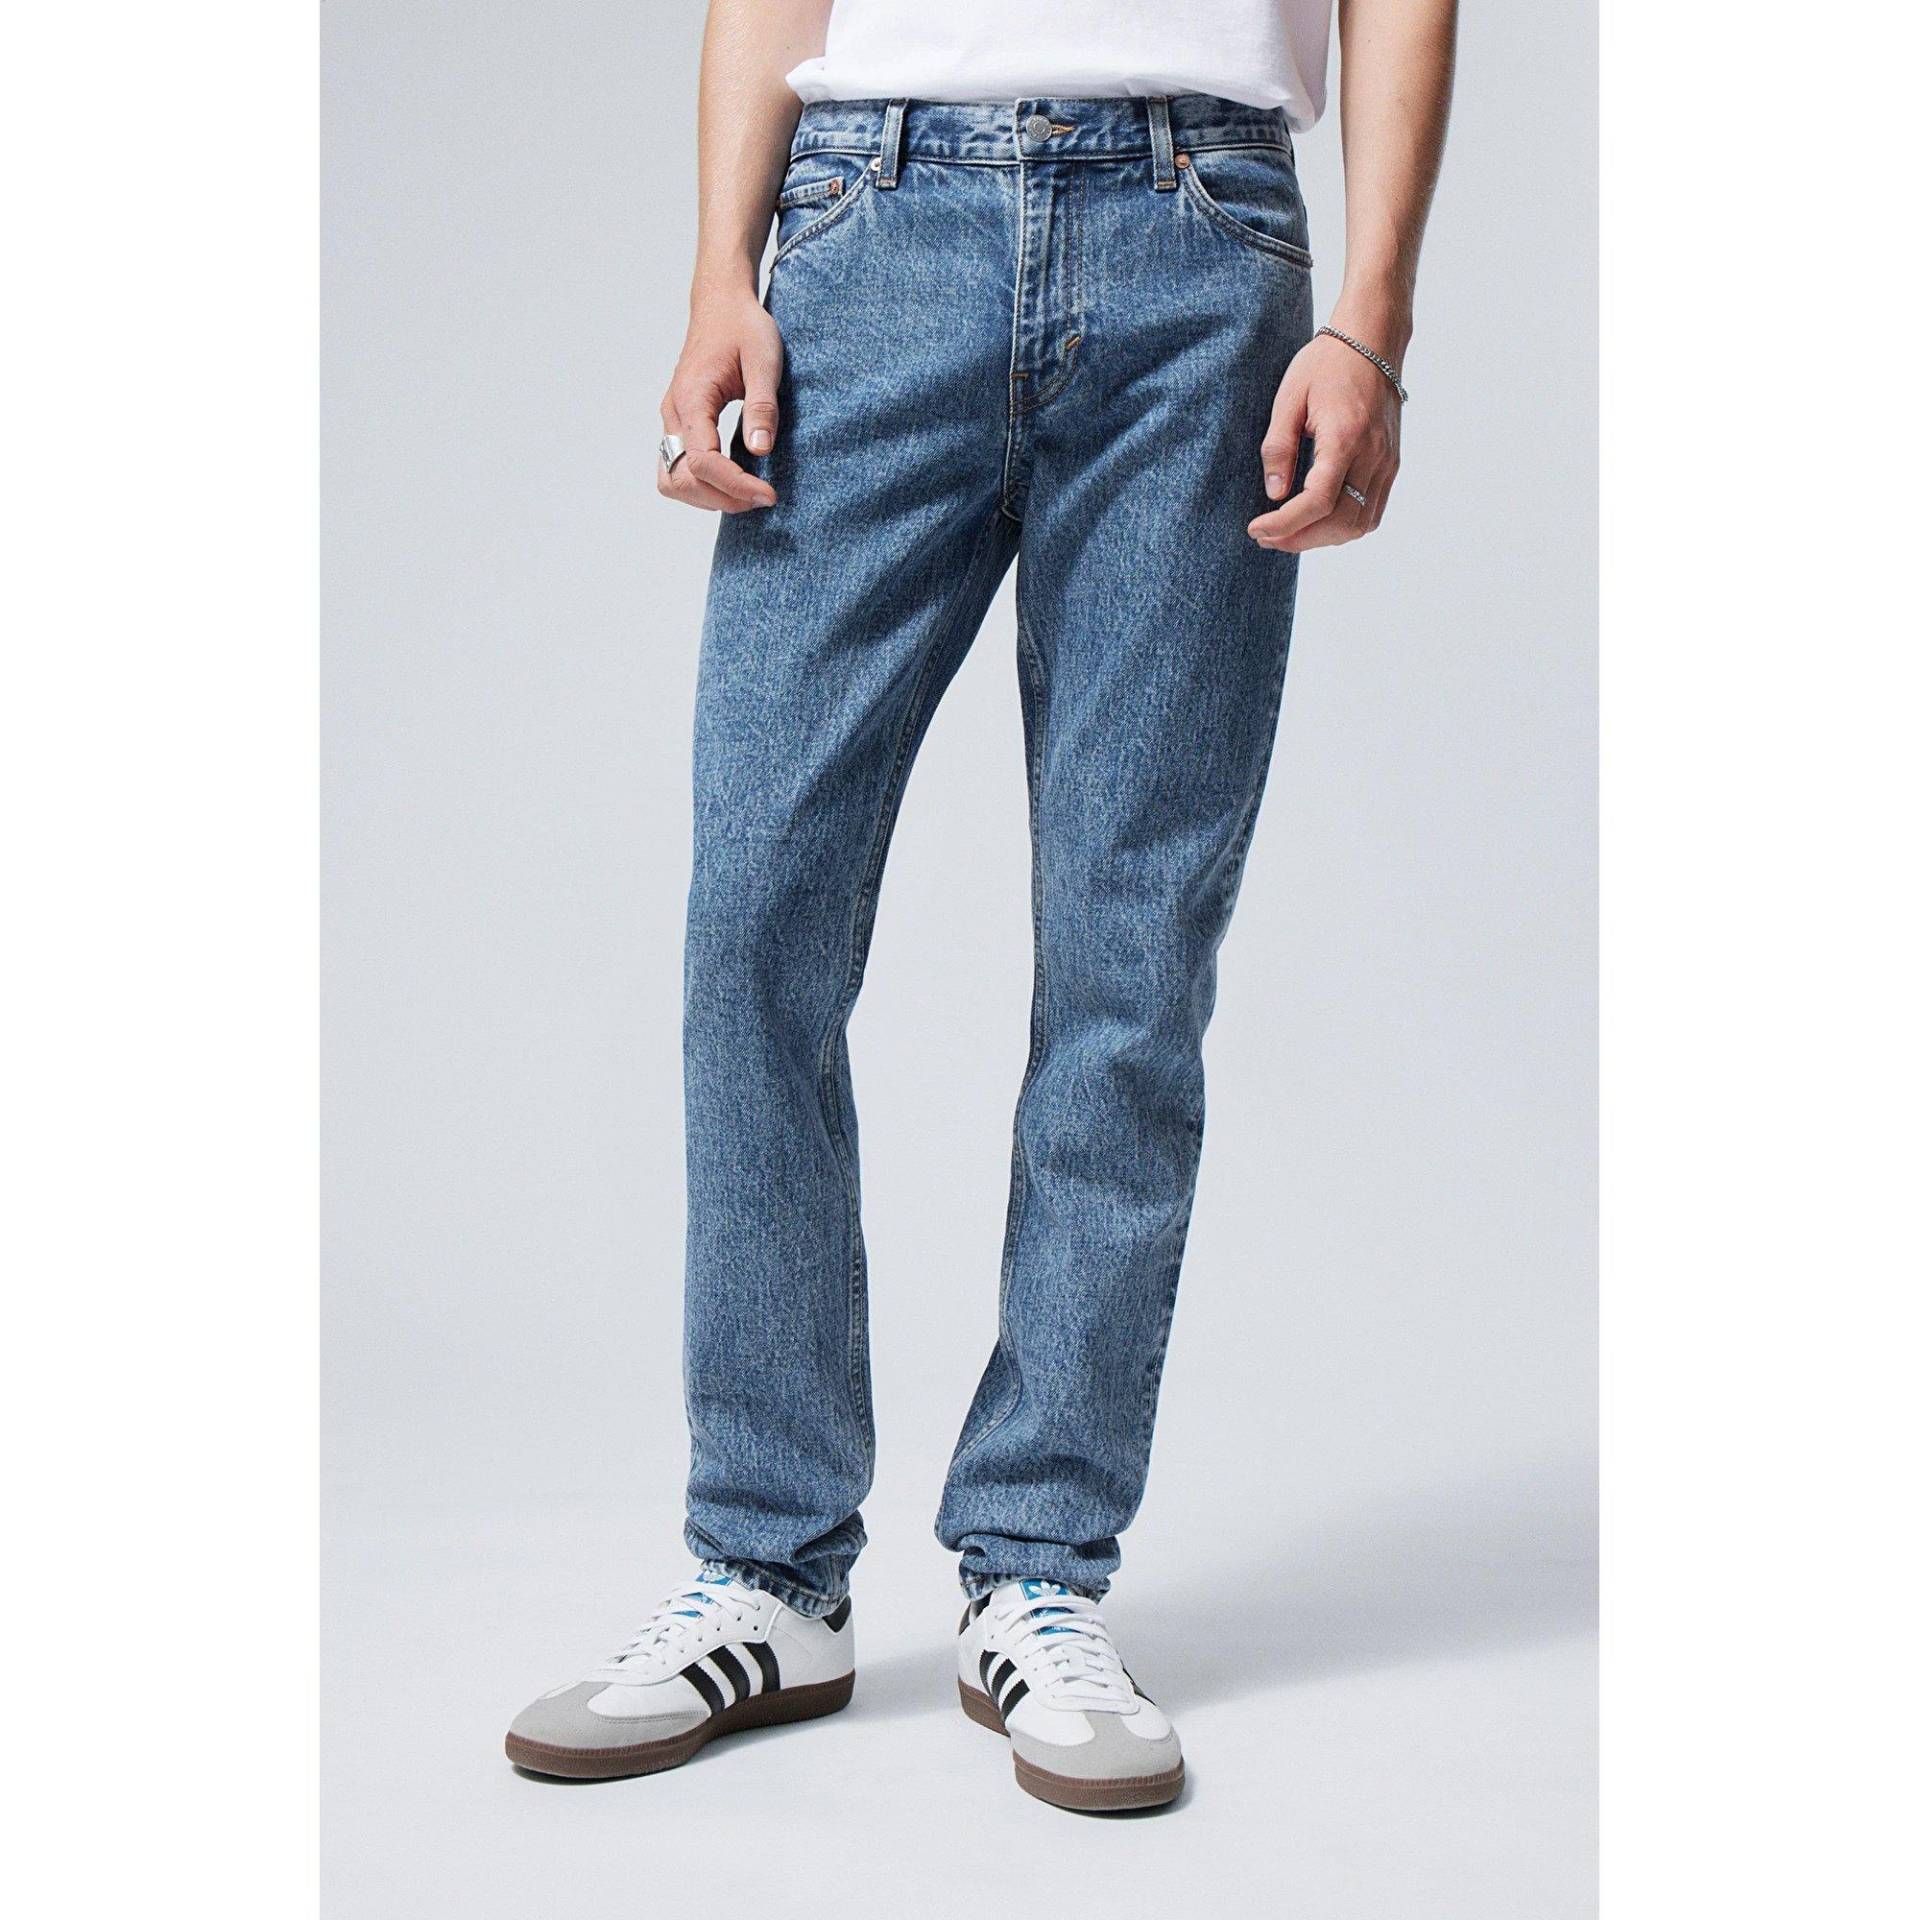 Jeans, Tapered Slim Fit Herren Blau L32/W32 von WEEKDAY